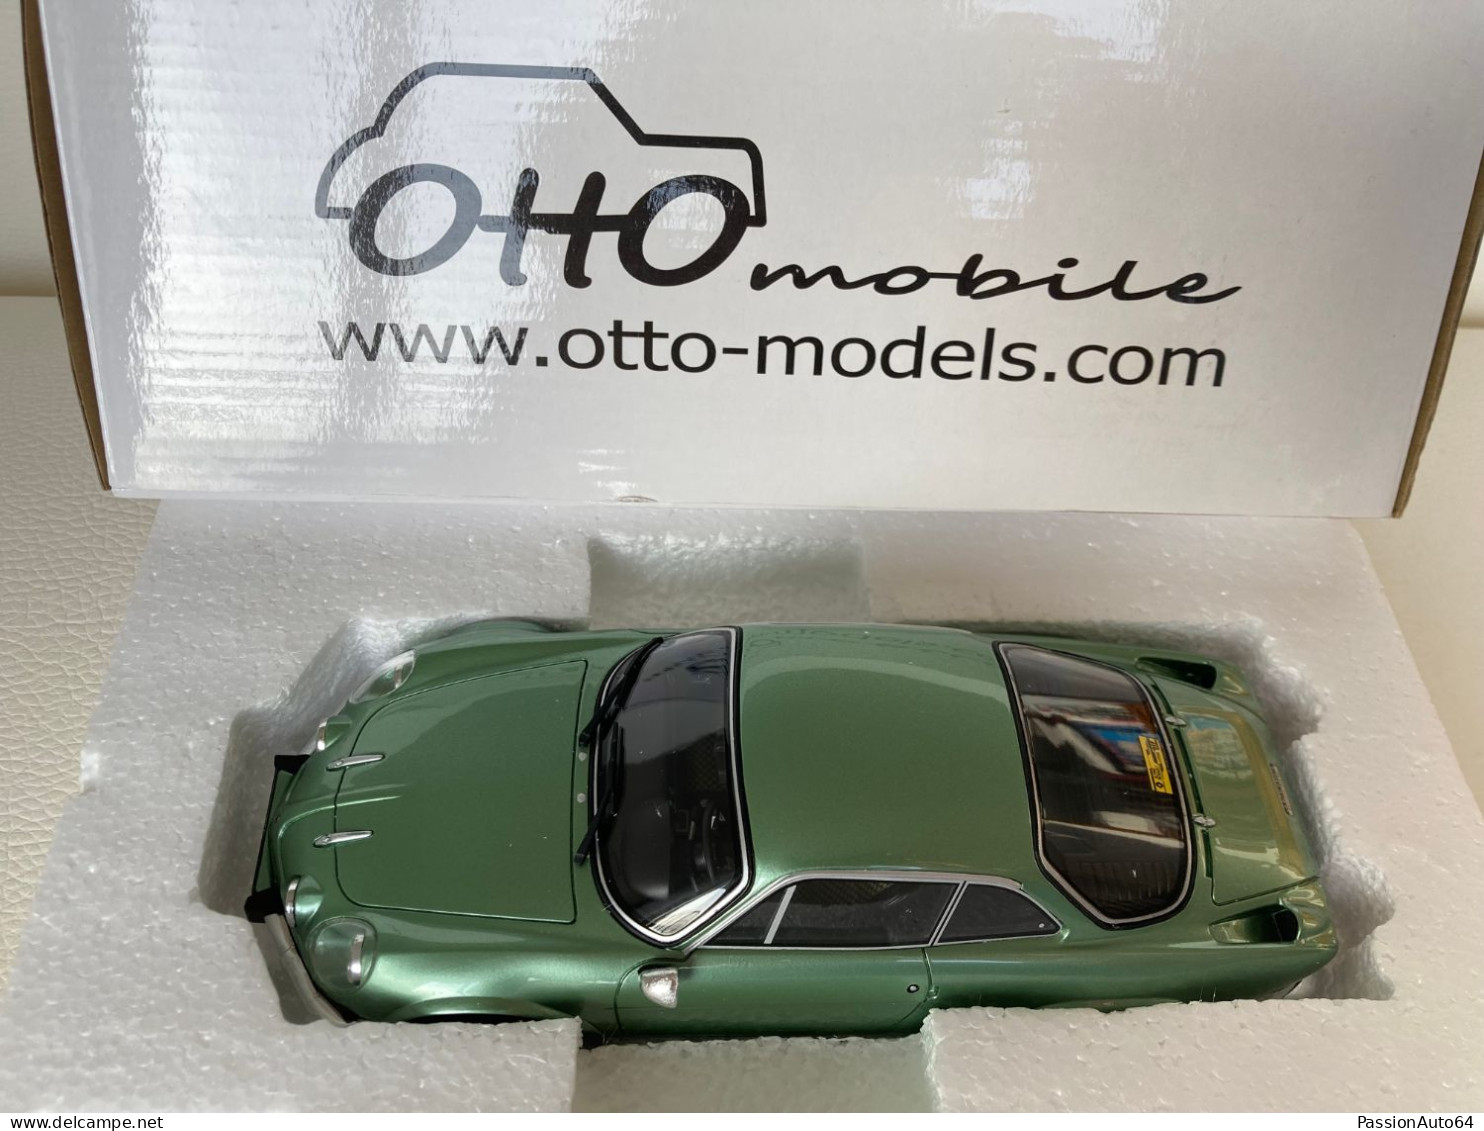 1/18 Otto Mobile Alpine A 110 1600 SX no Solido Norev Hot Wheels Spark Kyosho Minichamps Autoart CMC BBR CMR